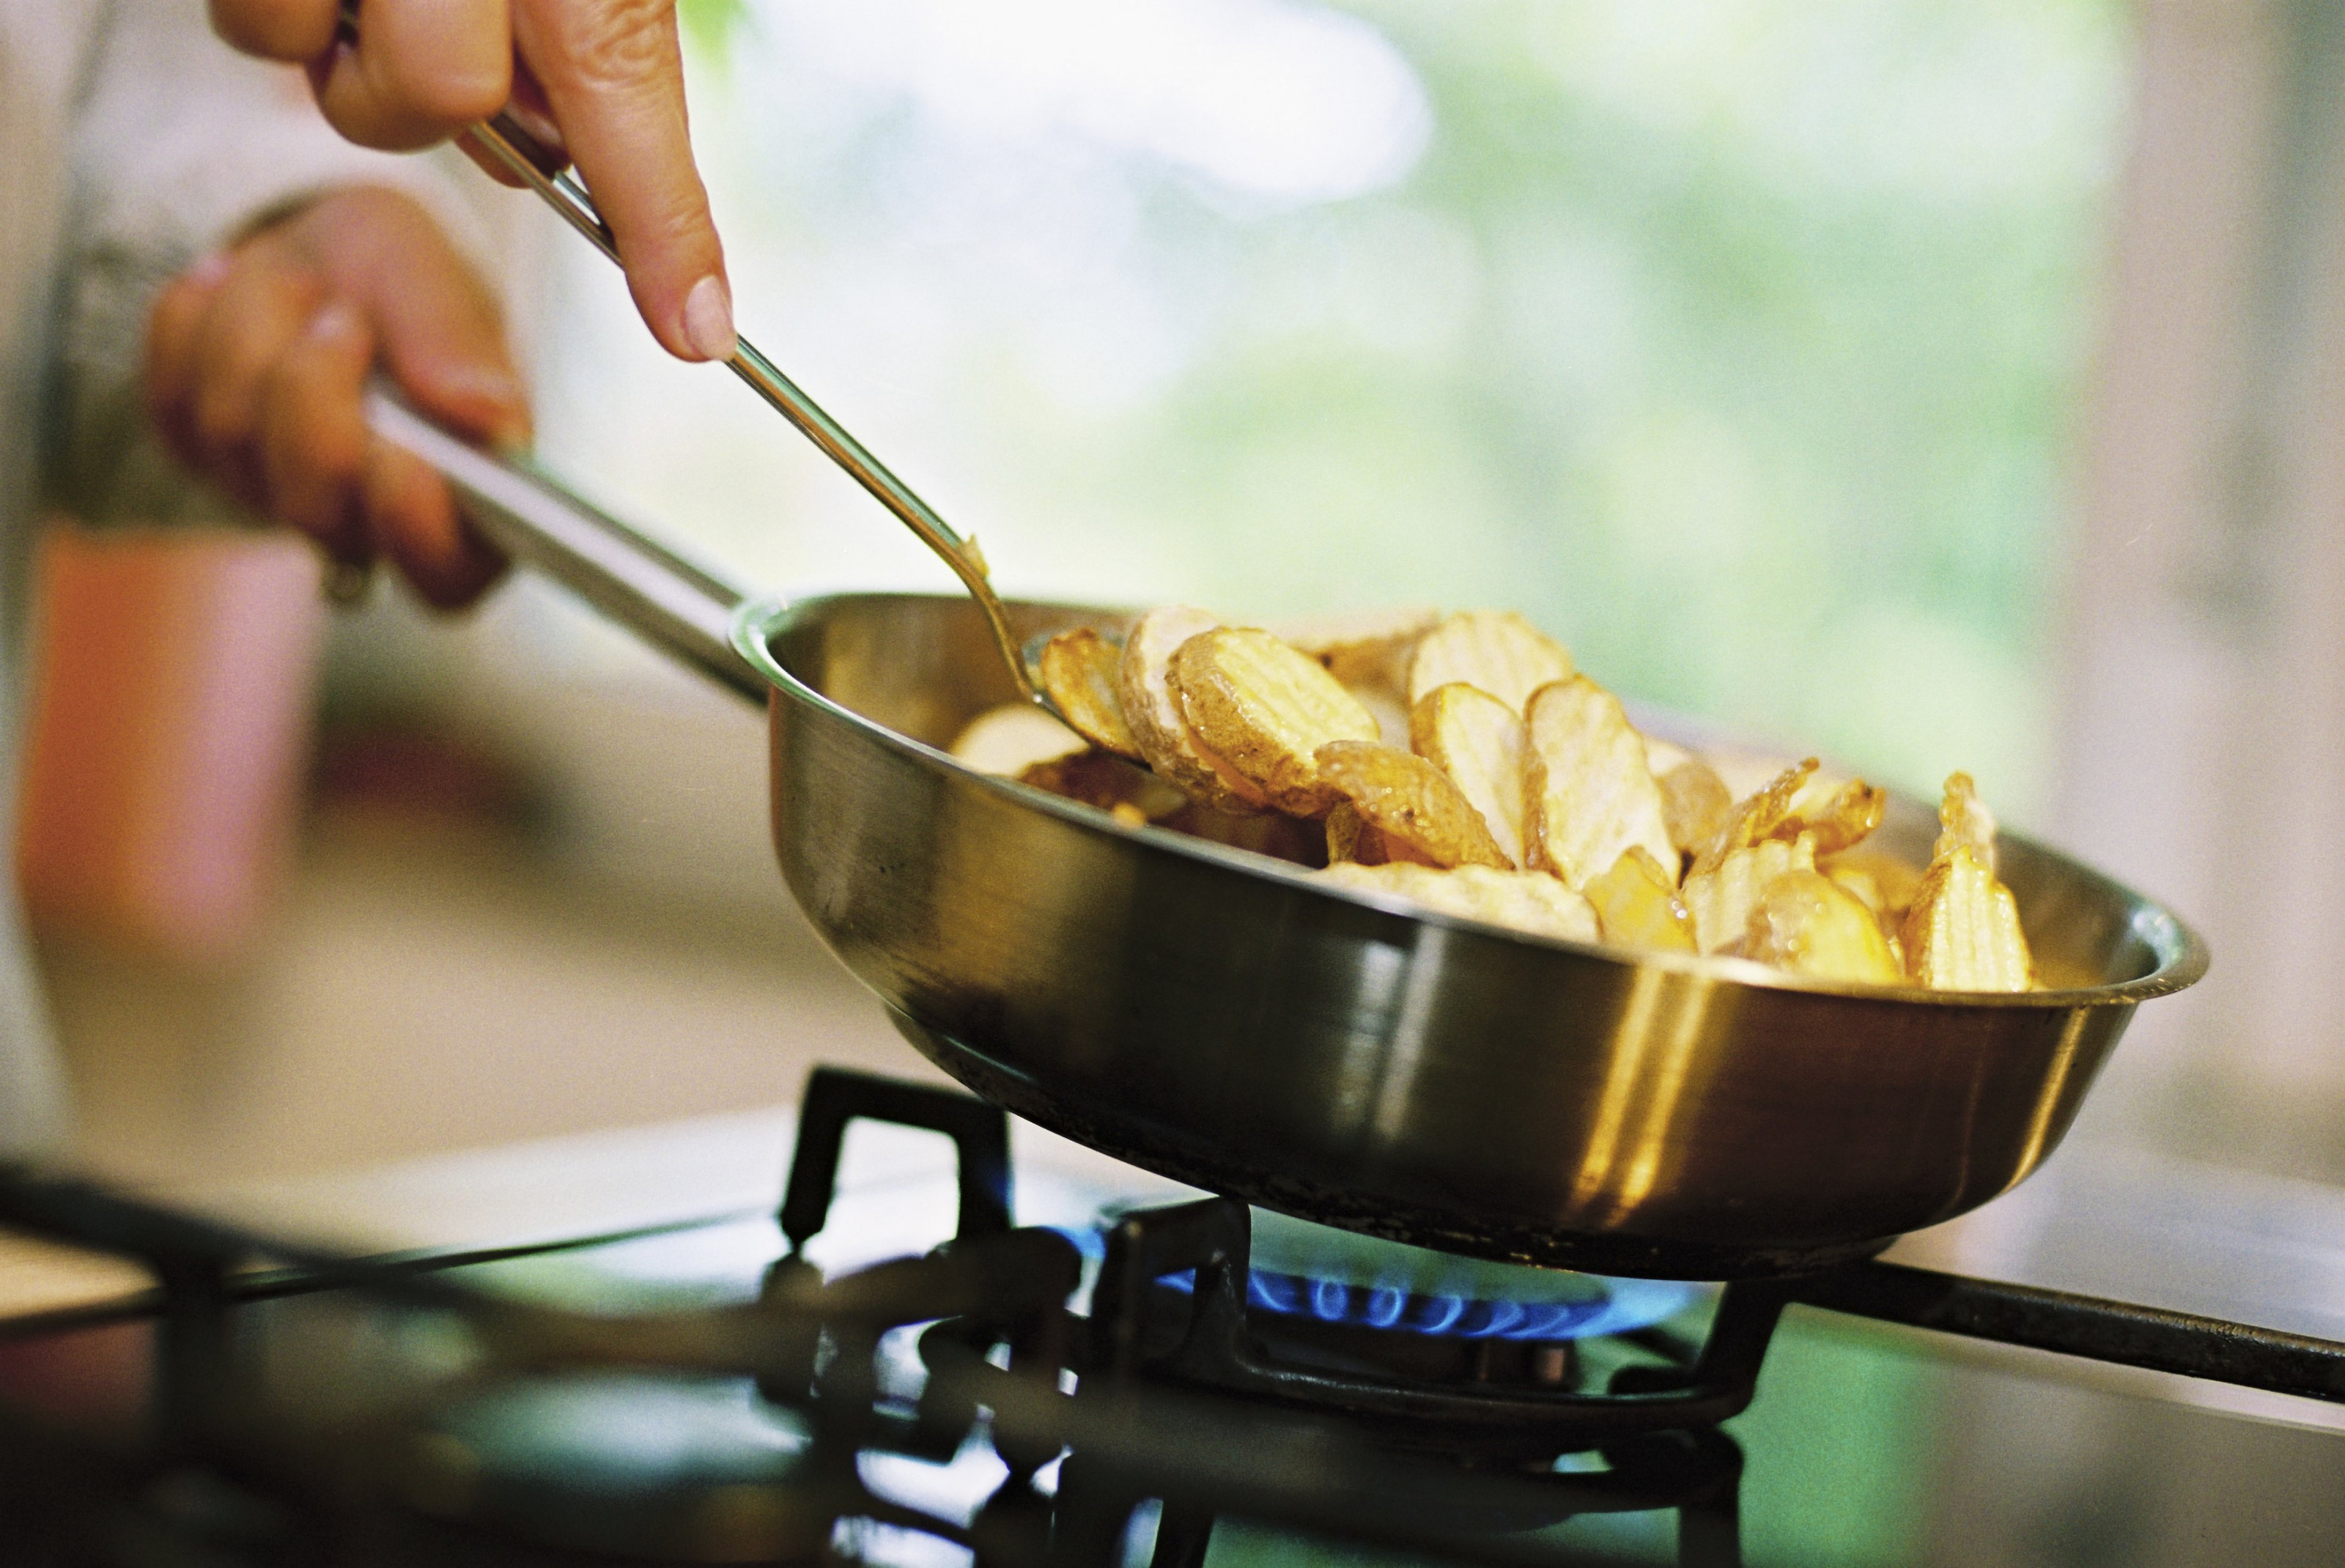 Можно готовить пищу в. Термическая обработка пищи. Процесс приготовления пищи. Сковородка с картошкой на плите. Еда жариться на сковородке.